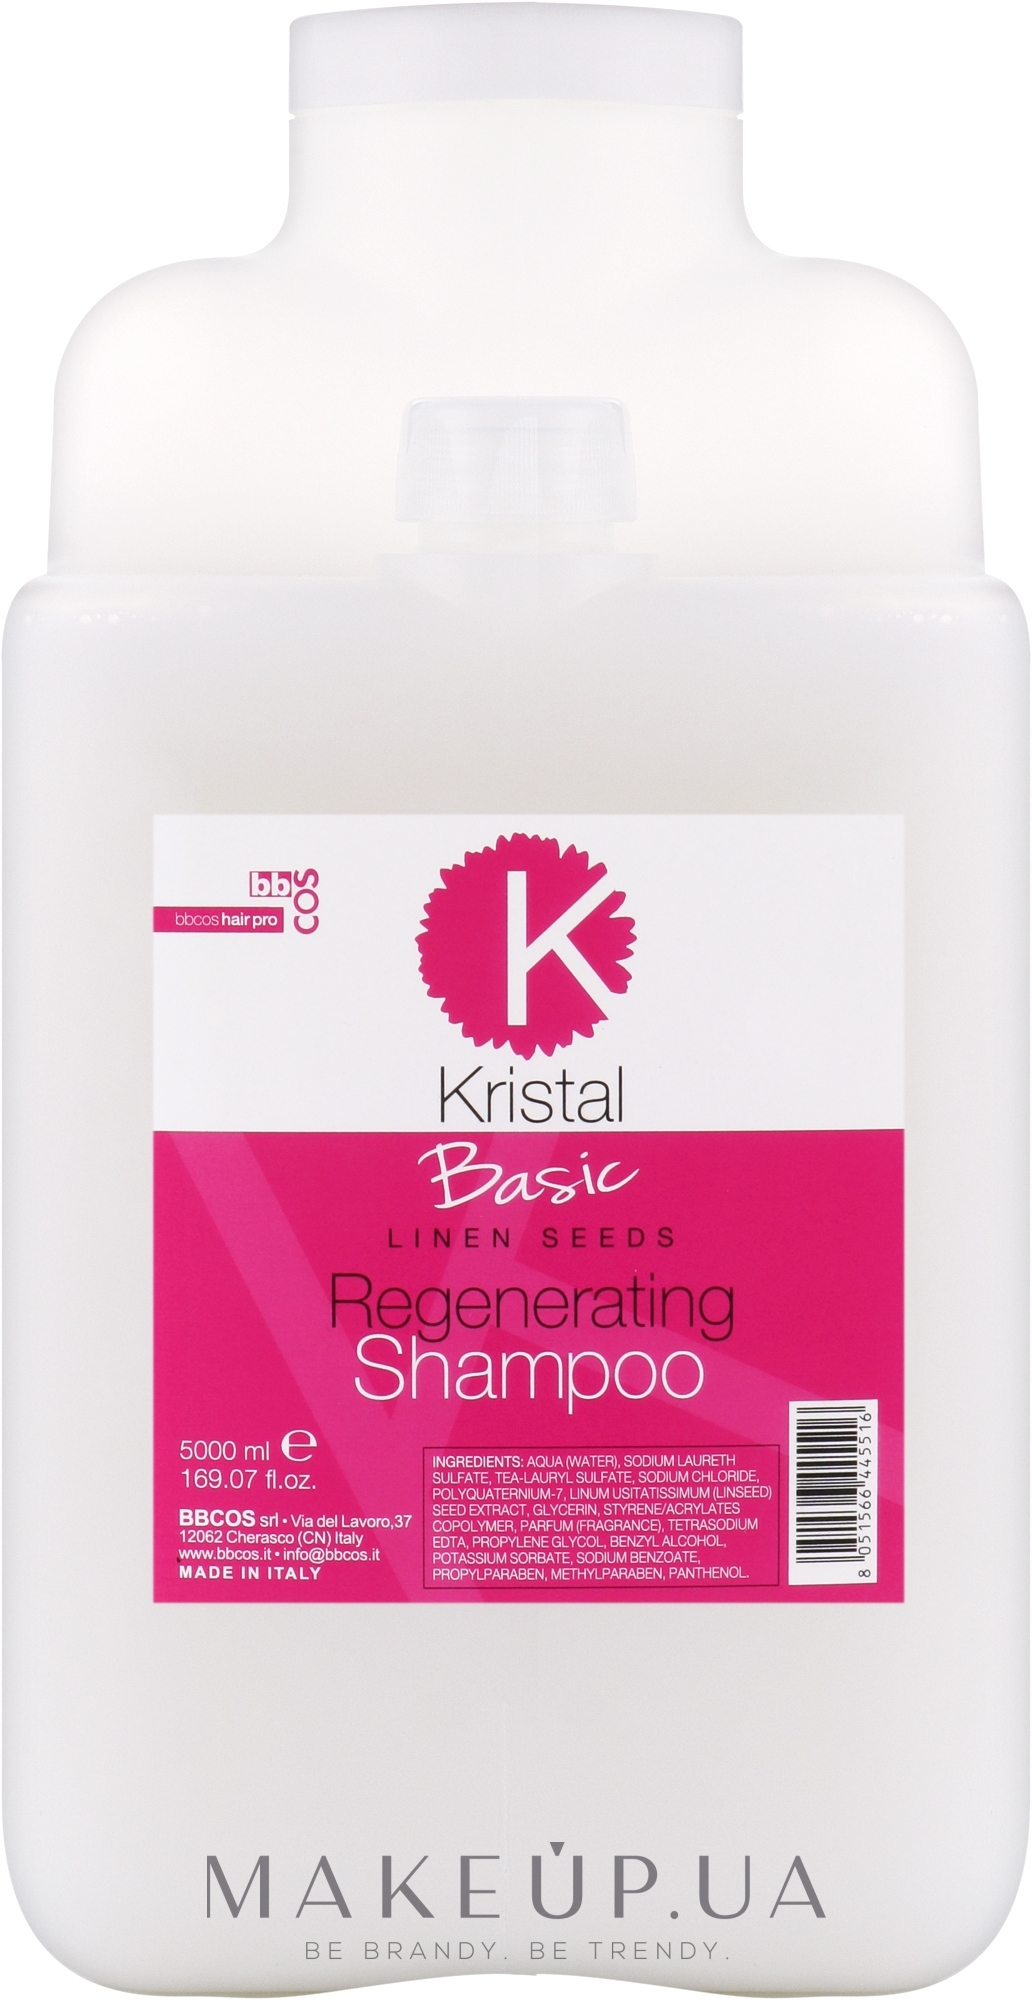 Шампунь регенерирующий для волос - BBcos Kristal Basic Linen Seeds Regenerating Shampoo — фото 5000ml